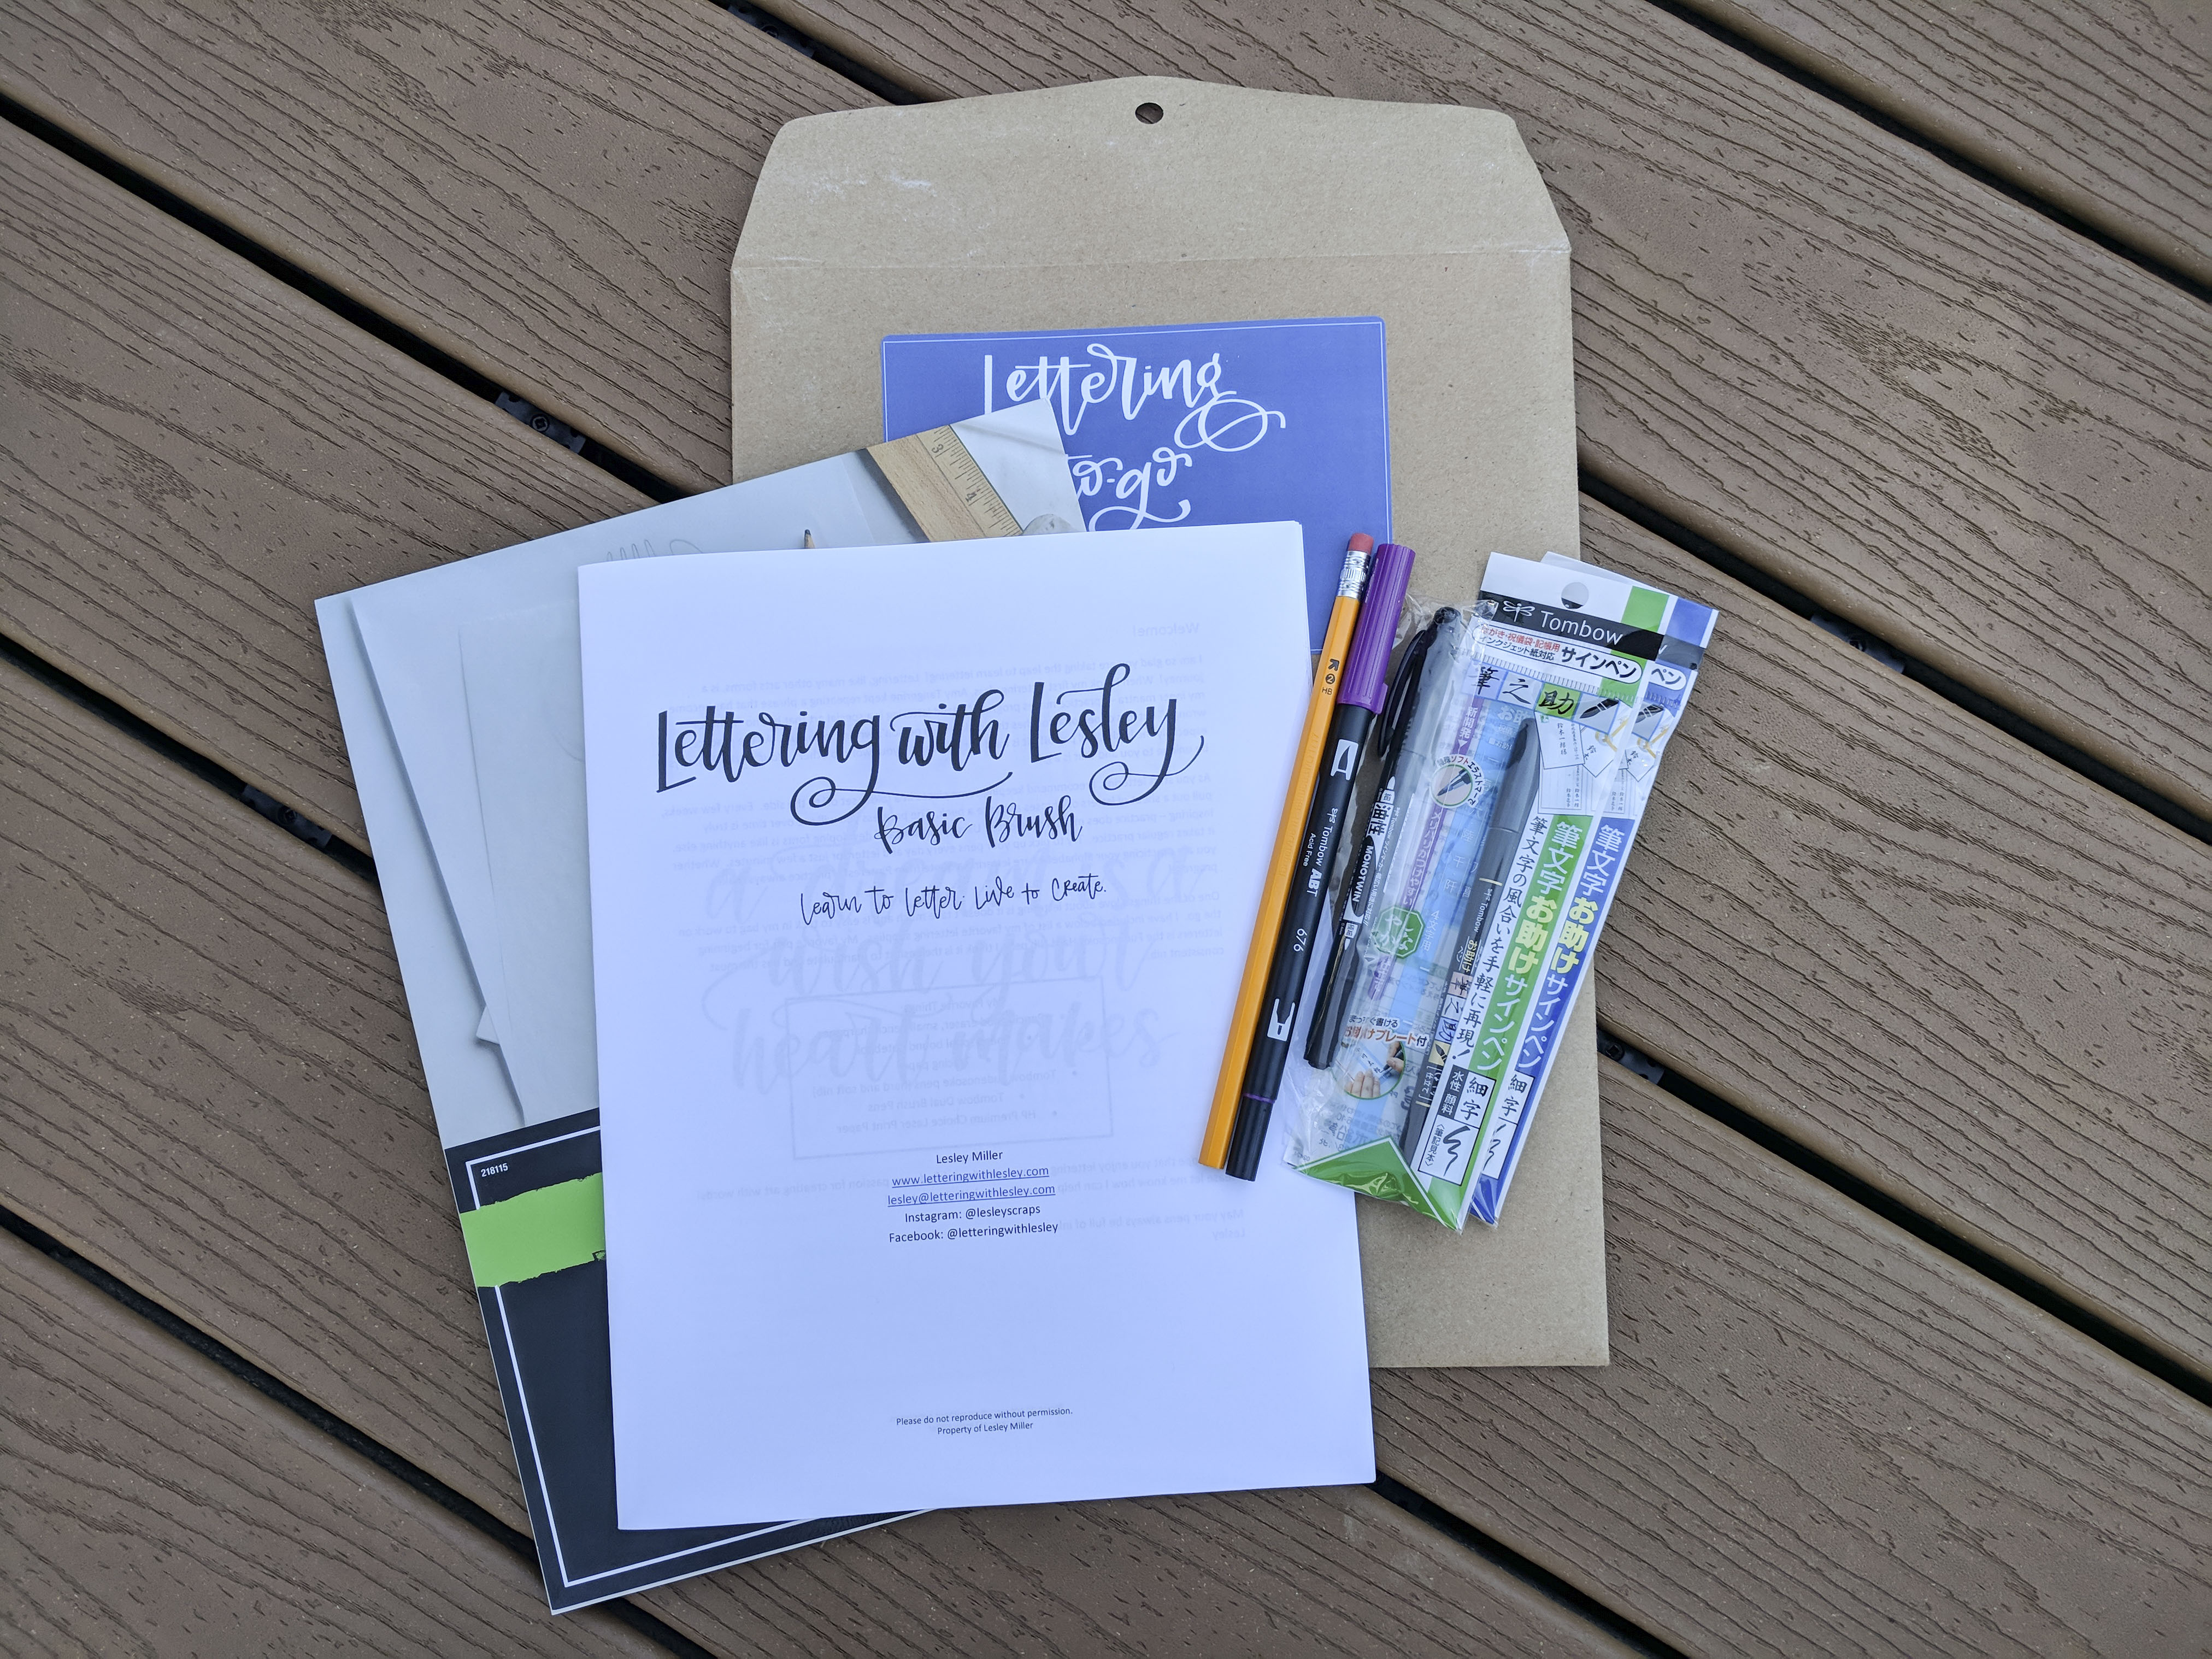 Beginner Hand Lettering Kit